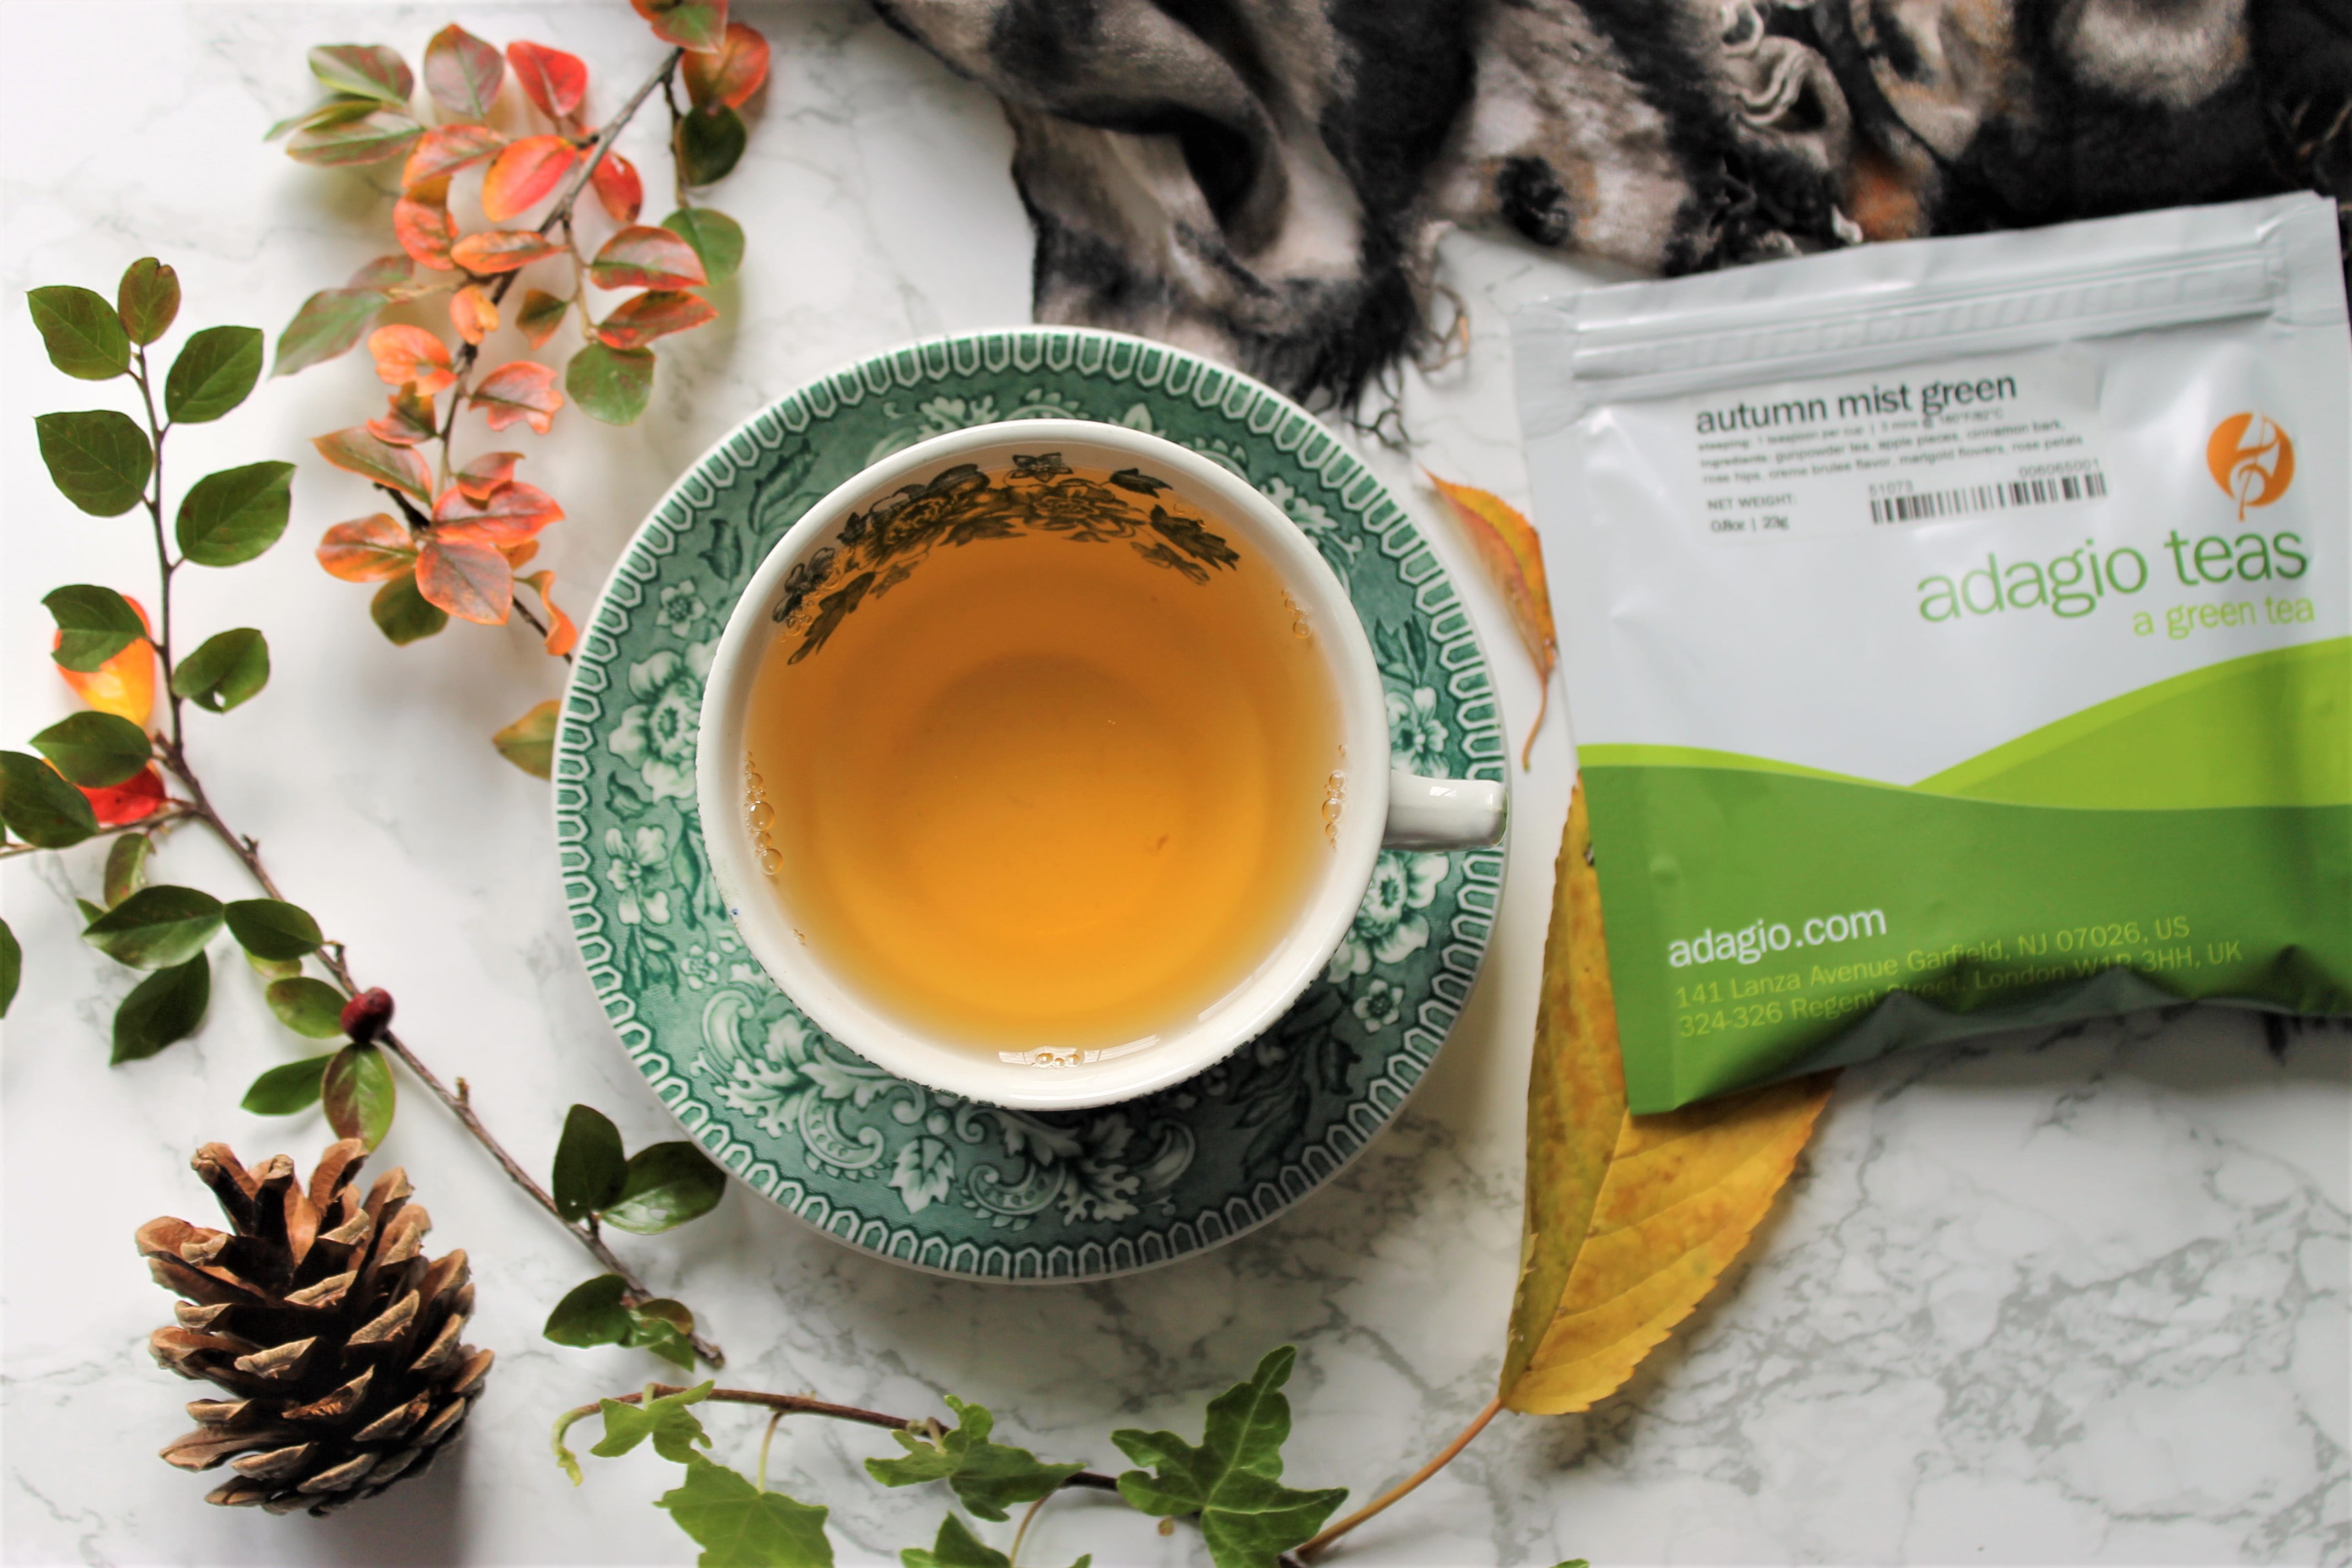 adagio autumn mist green tea review